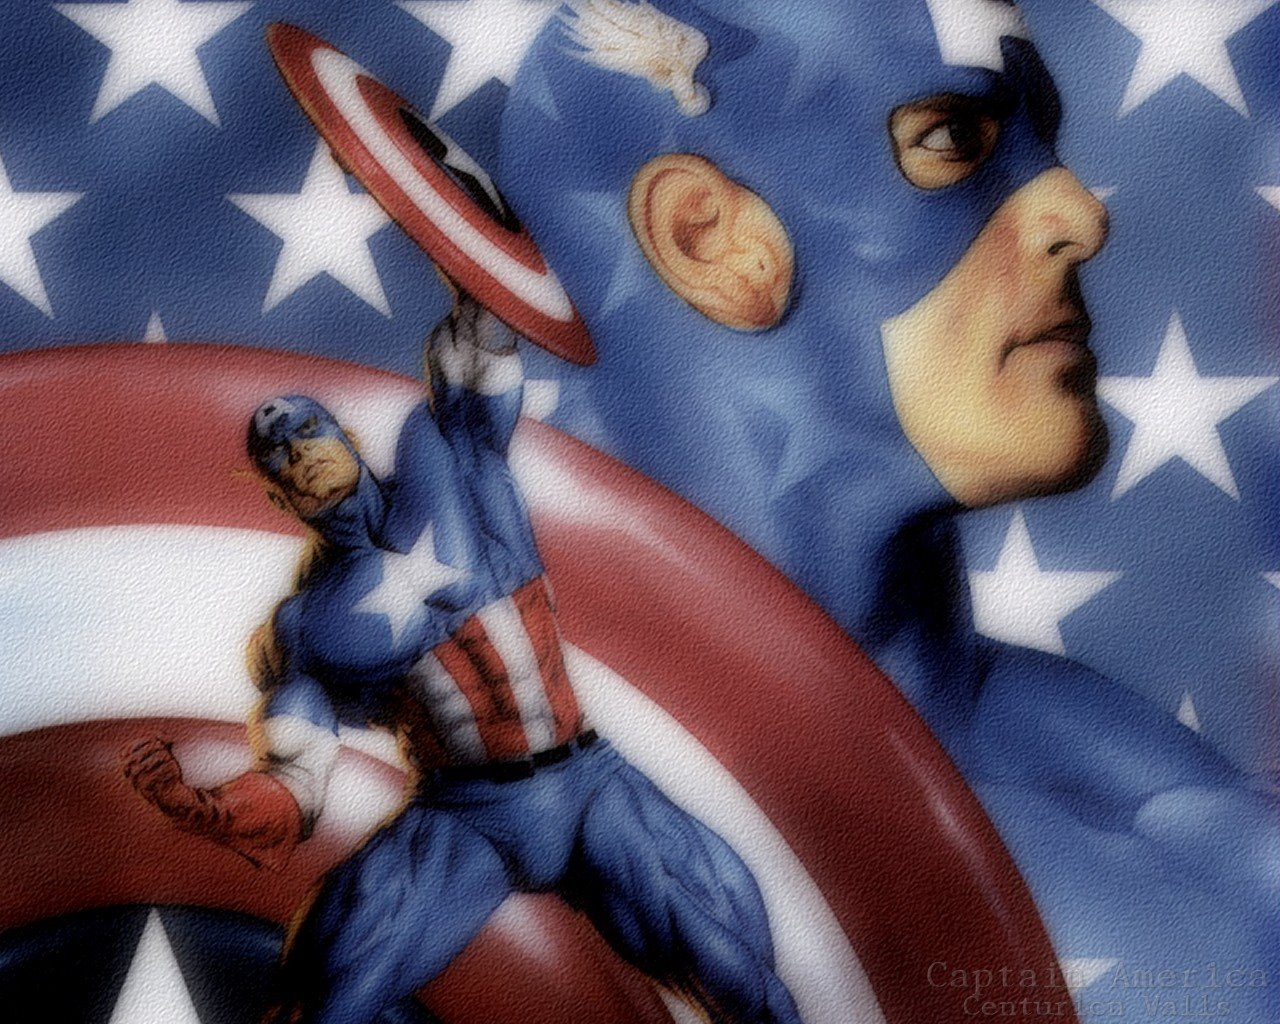 [Capitán+América.bmp]